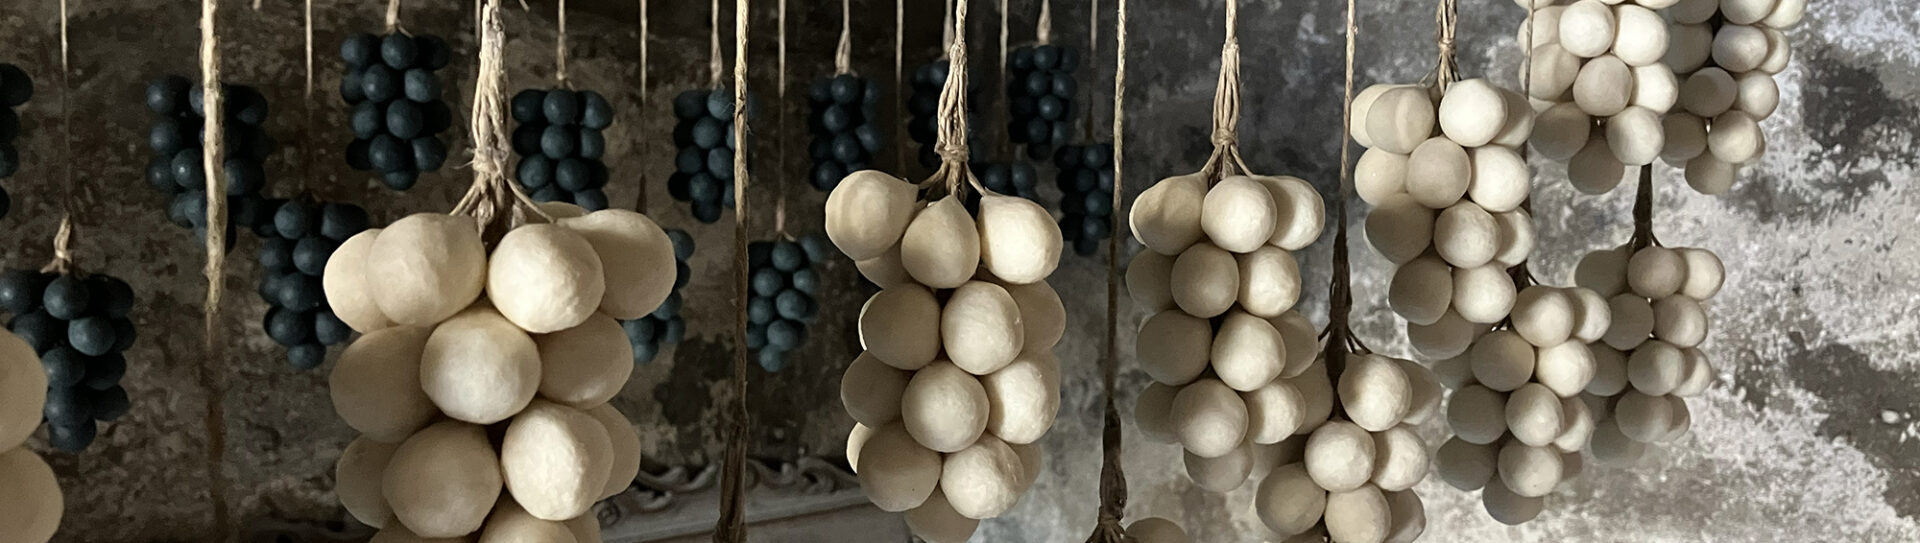 bannière savons raisin accrochés à sécher dans l'atelier de fabrication traditionnel libanais